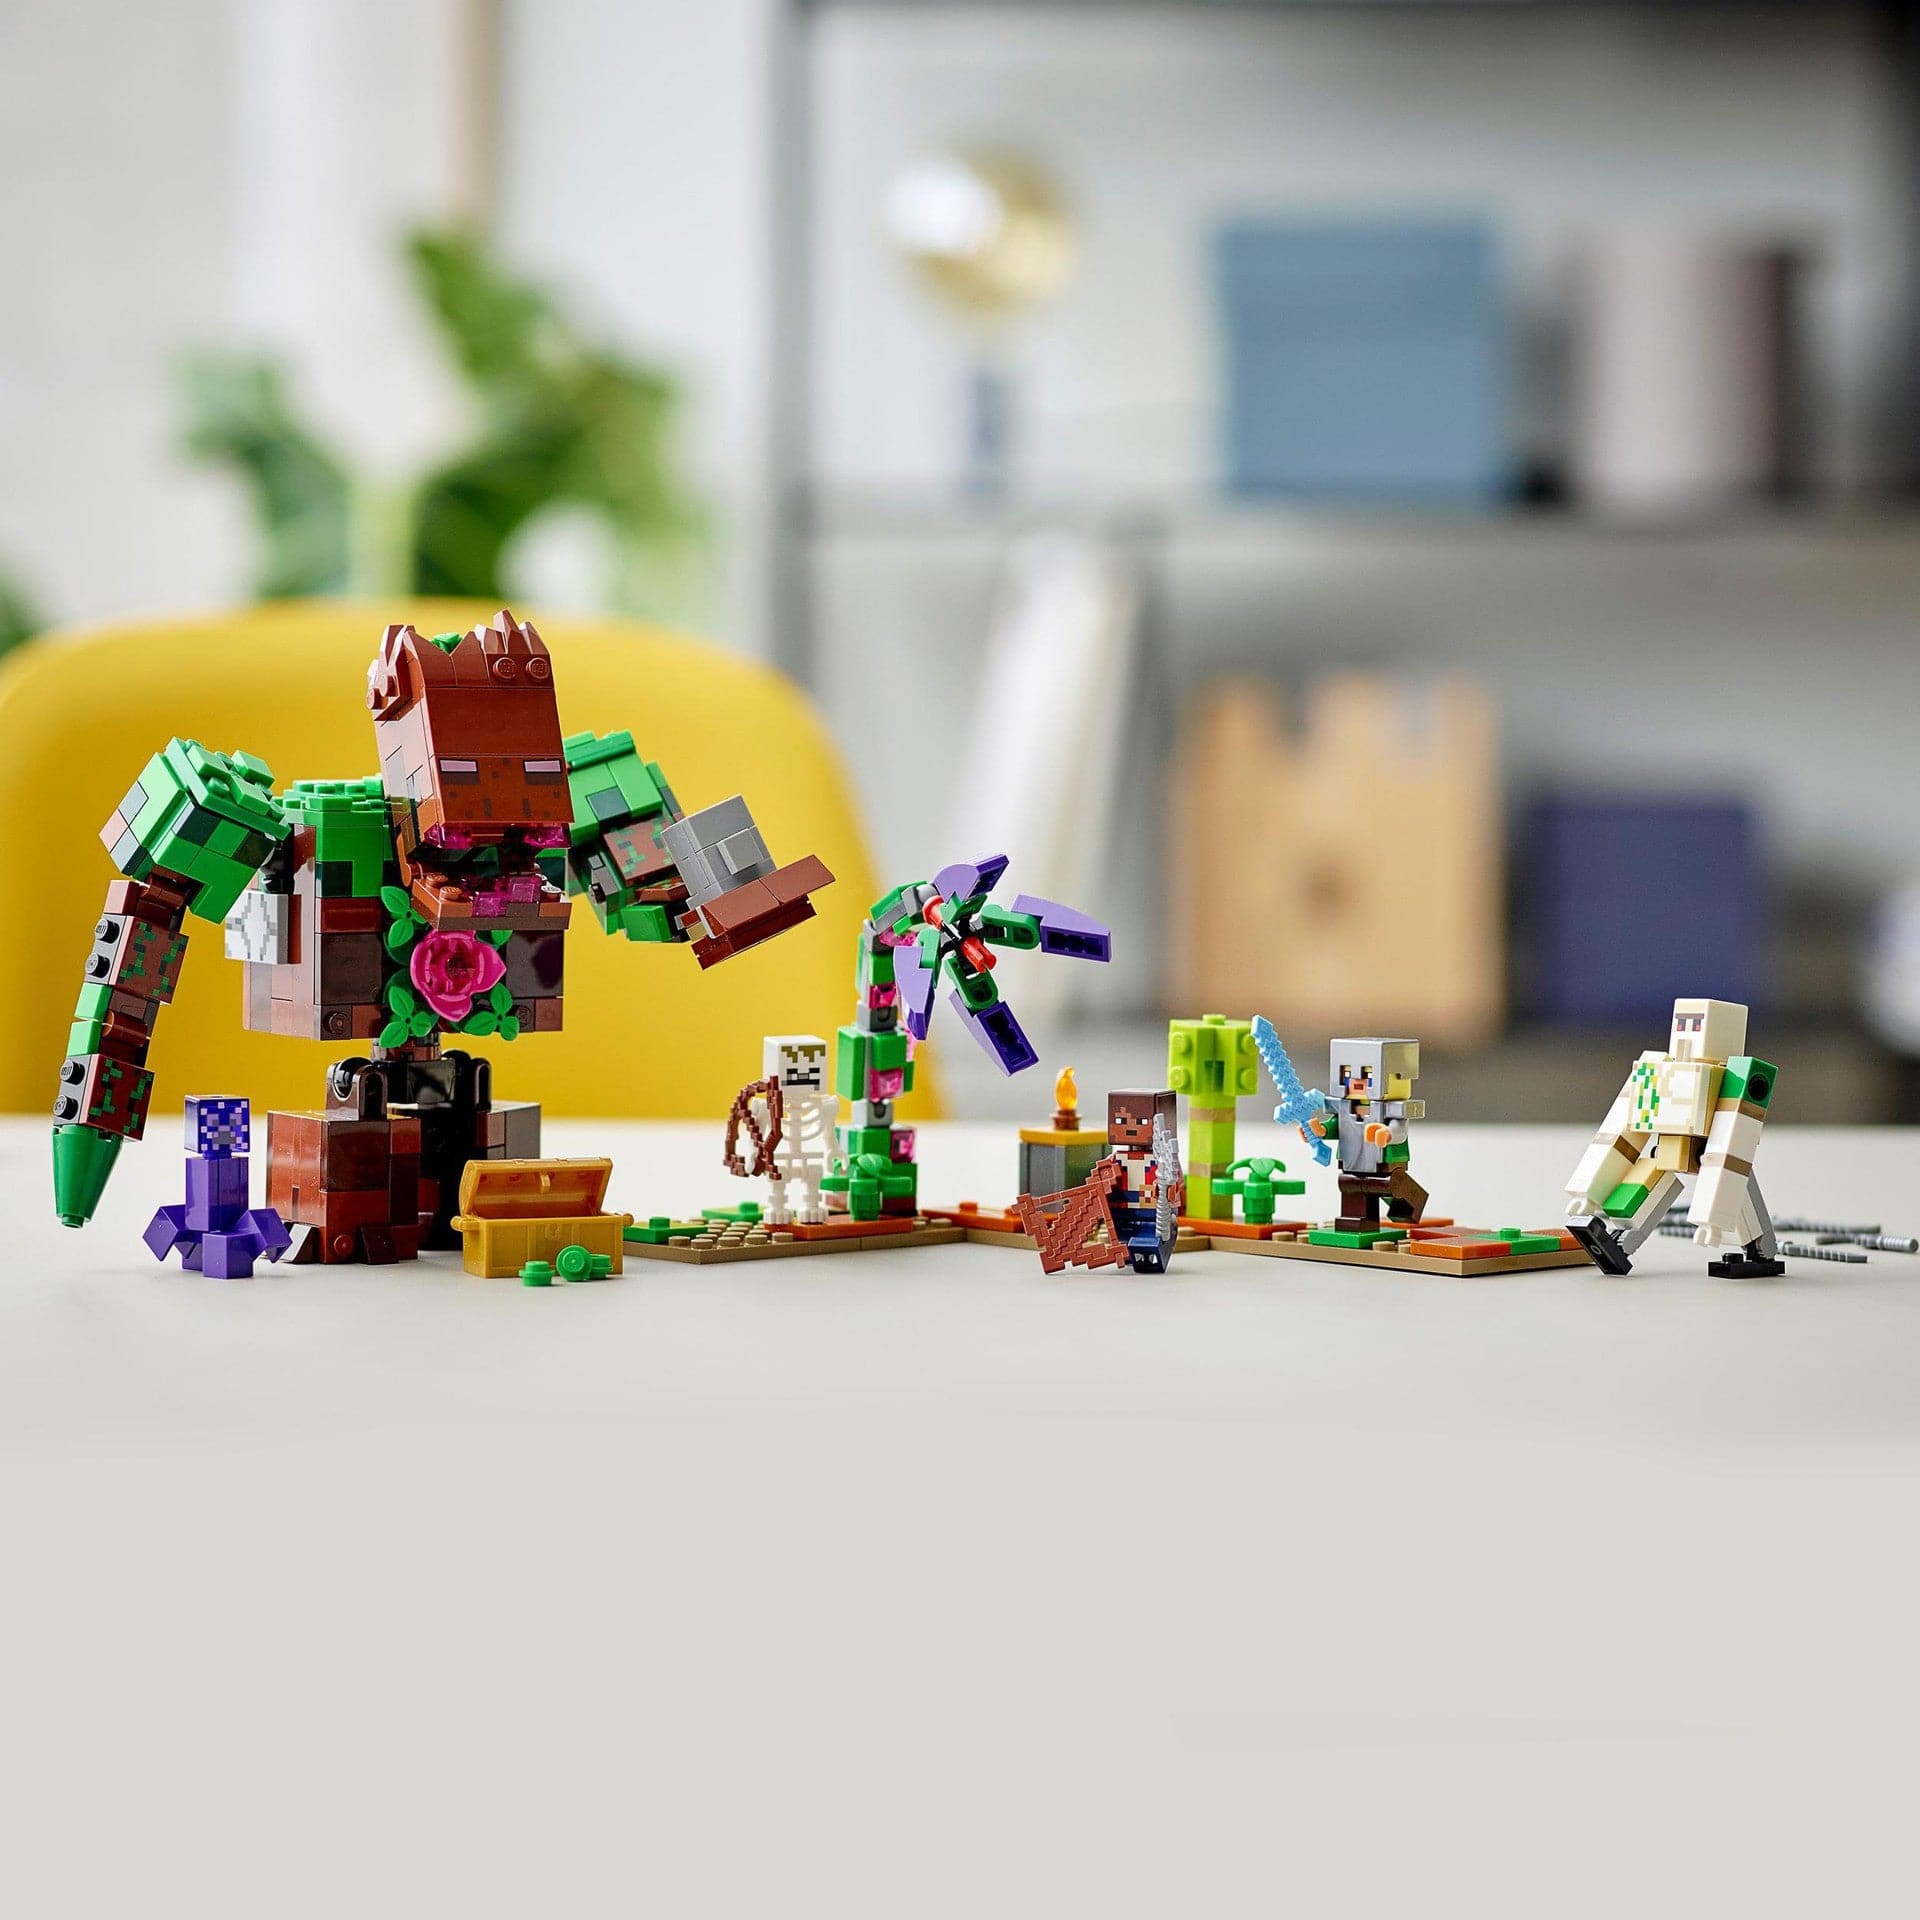 LEGO Minecraft - Det afskyelige junglevæsen (21176) Lego